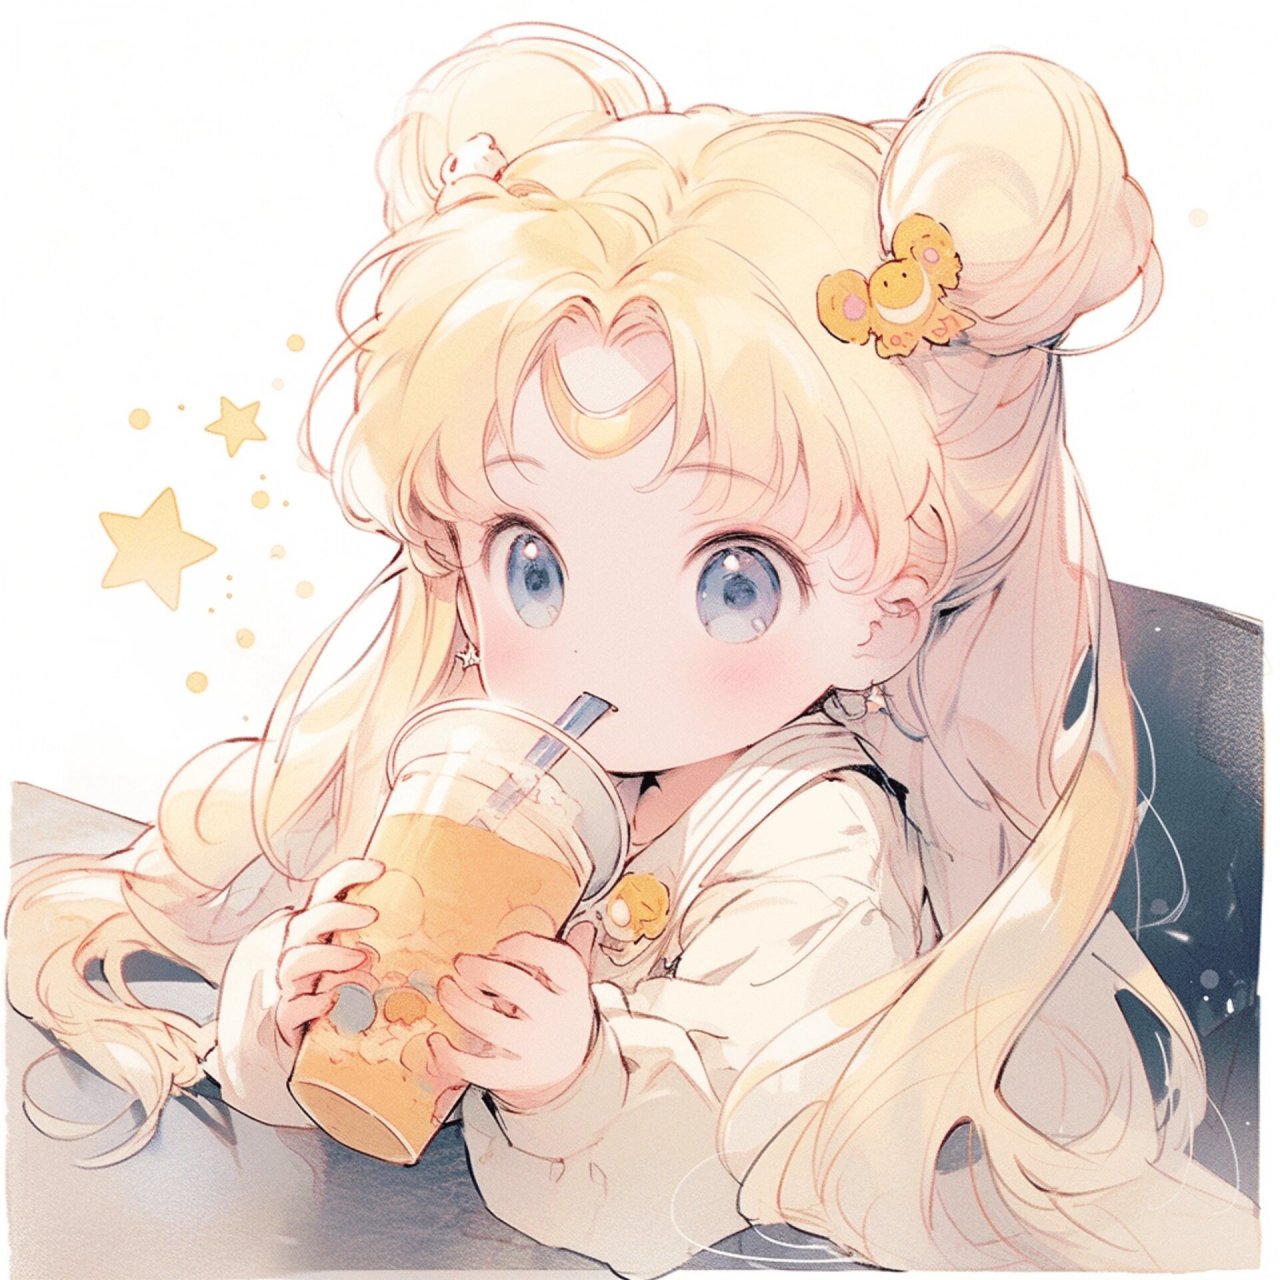 女孩喝奶茶漫画图片图片